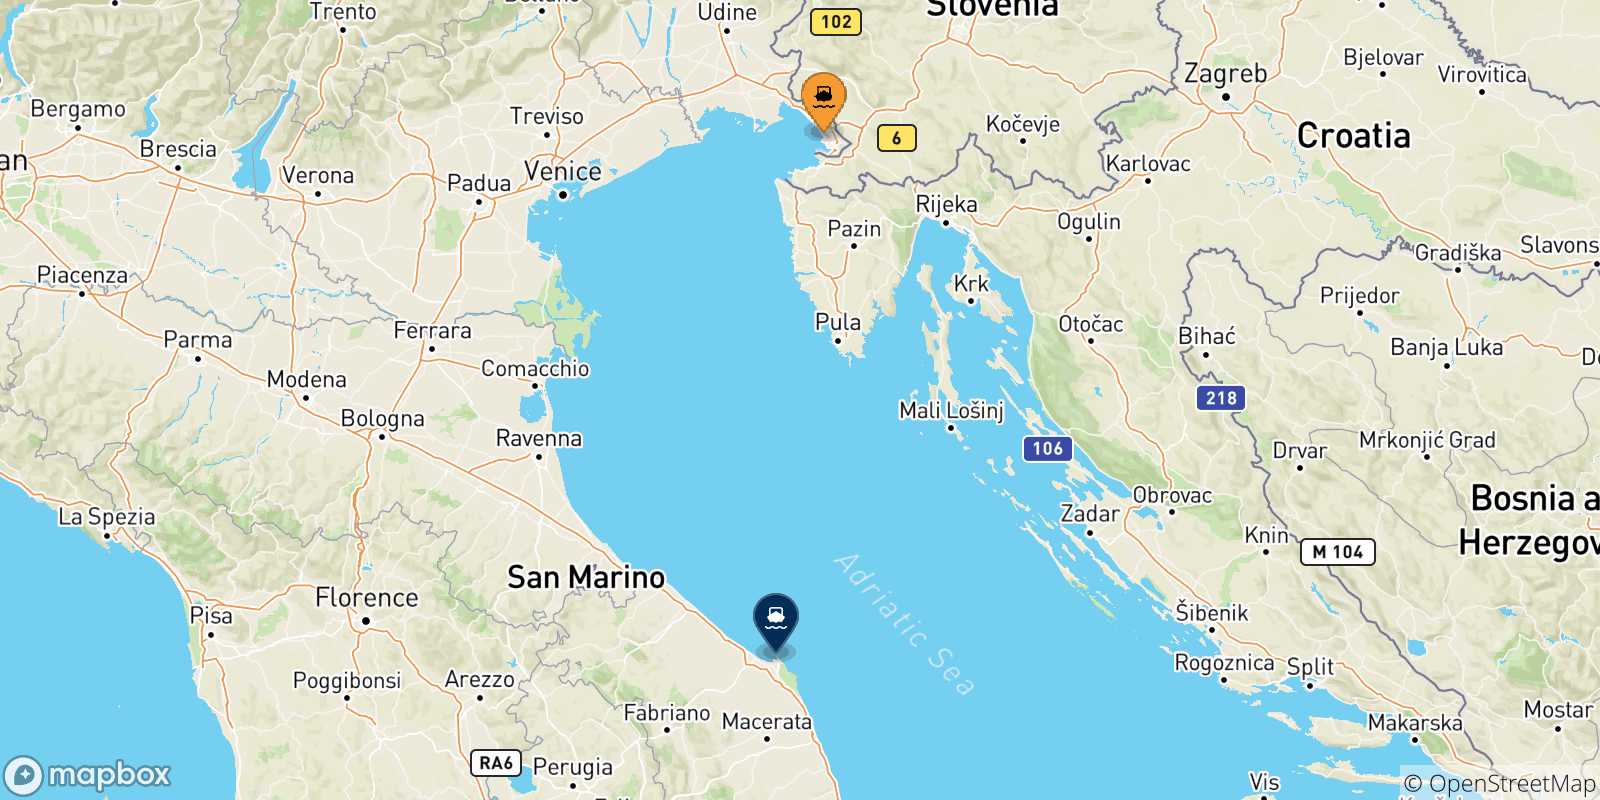 Mappa delle possibili rotte tra Trieste e l'Italia